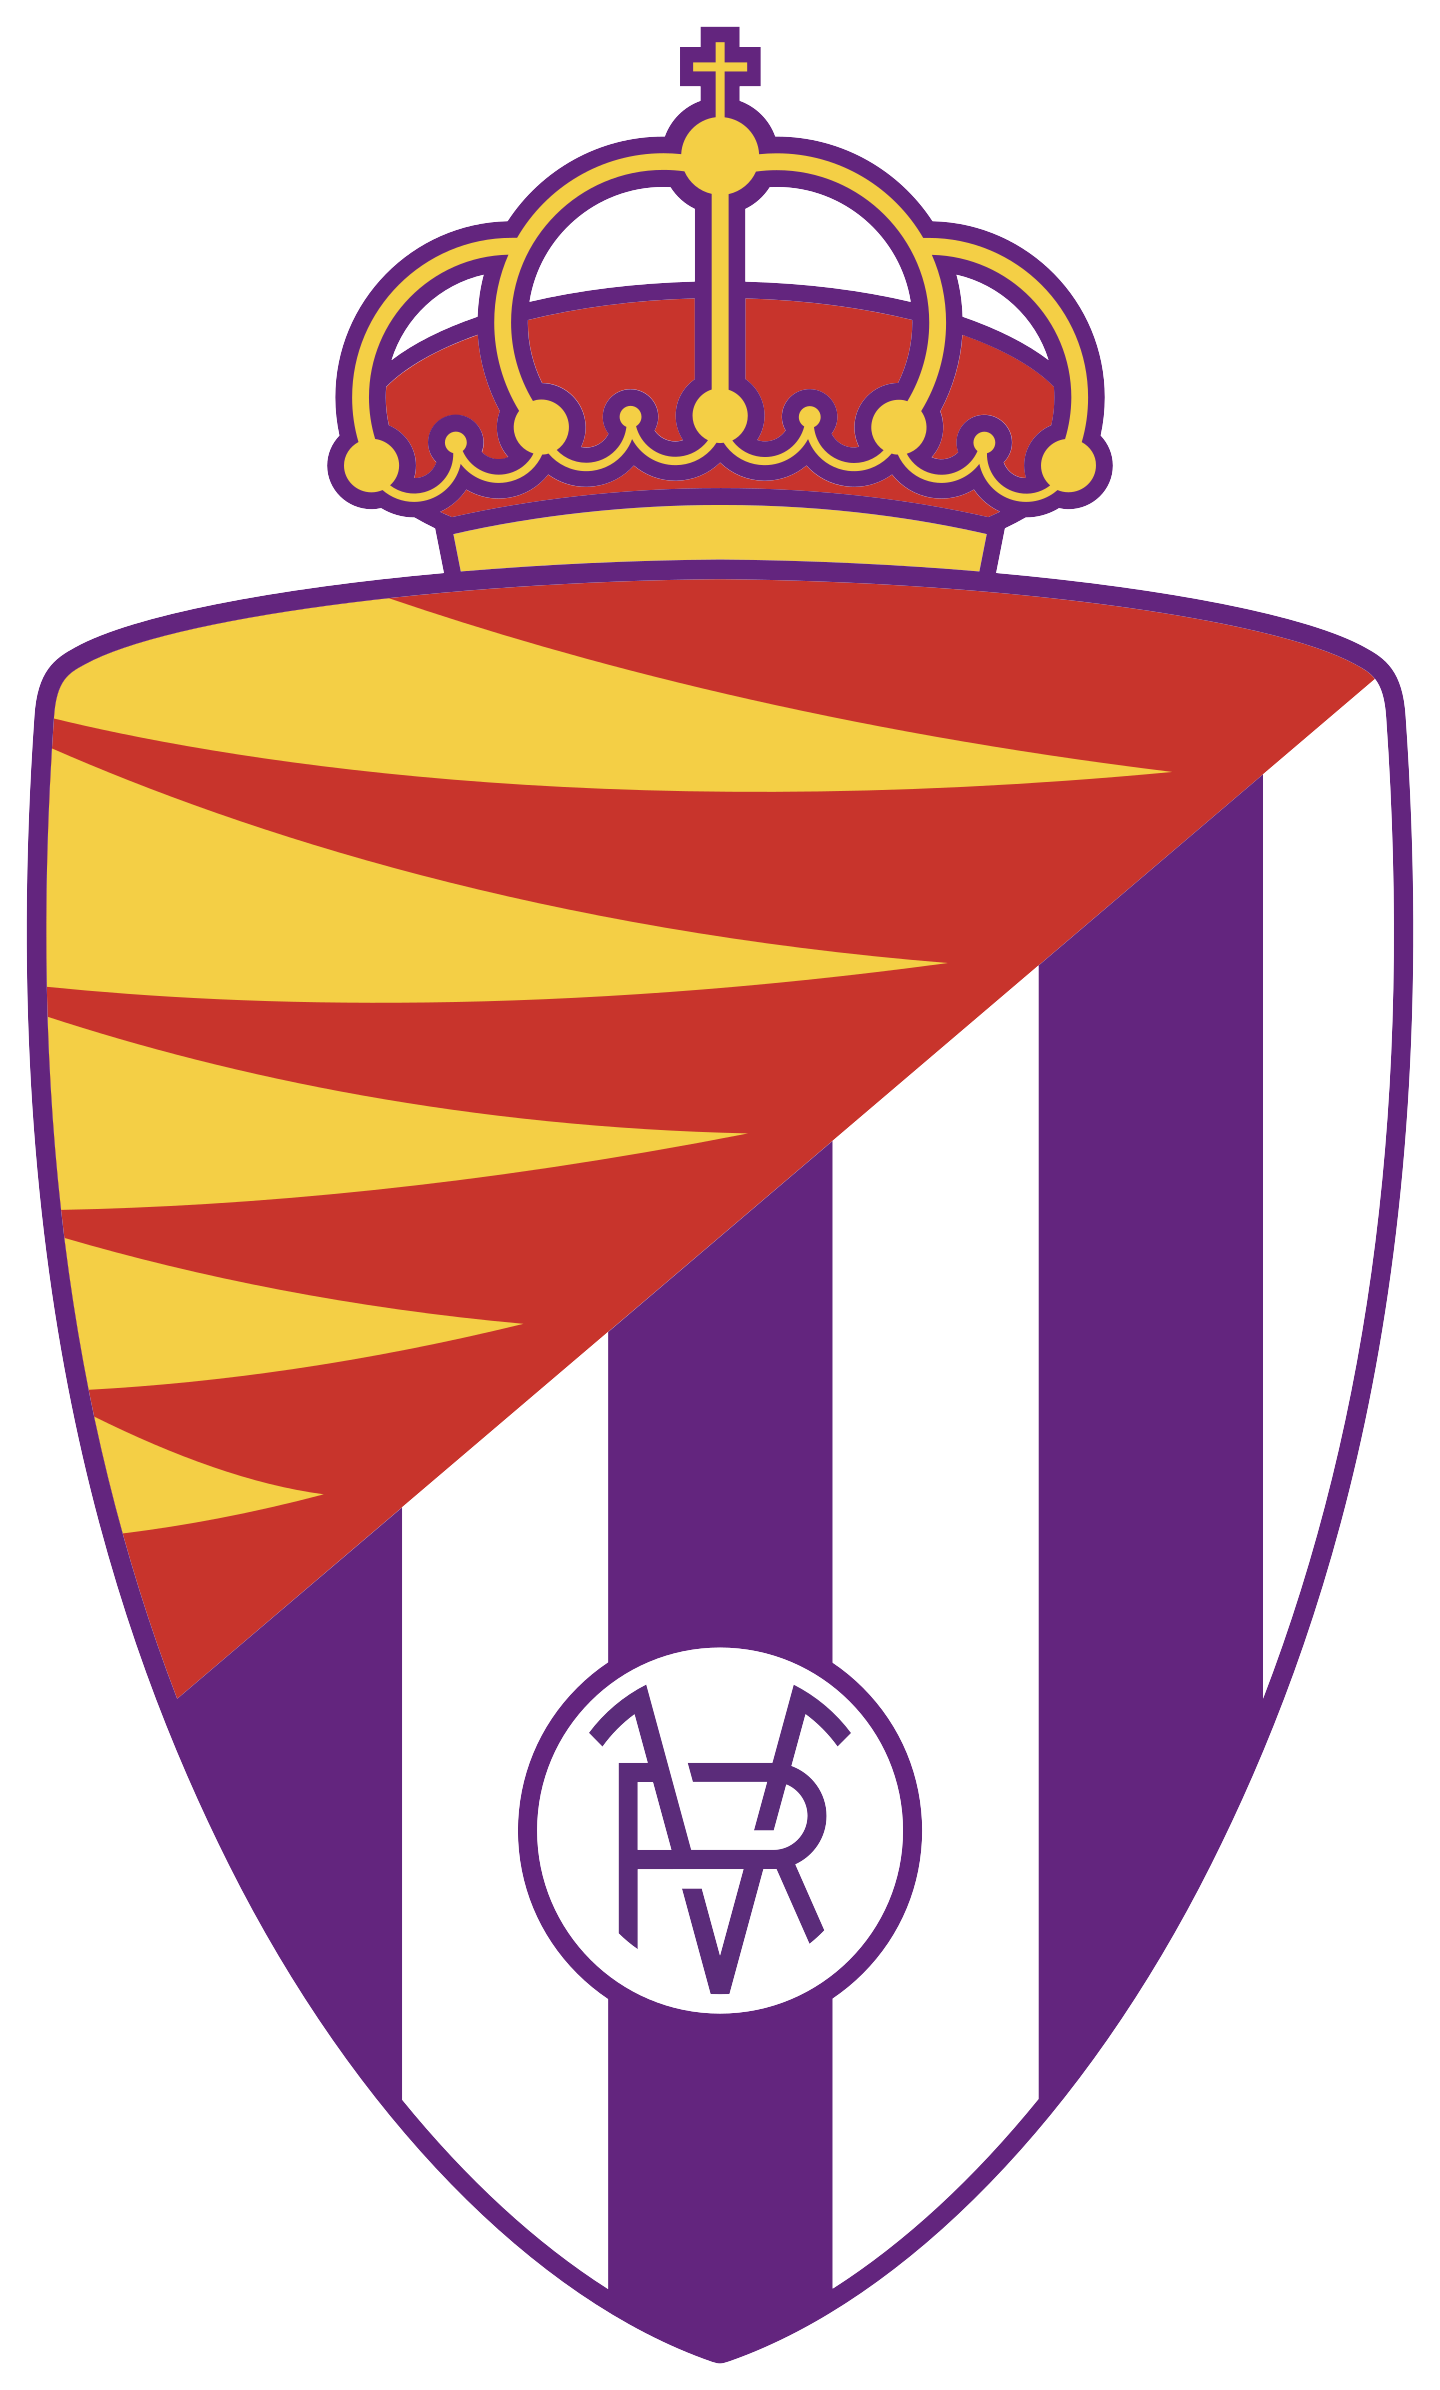 real valladolid logo 2 - Real Valladolid Logo